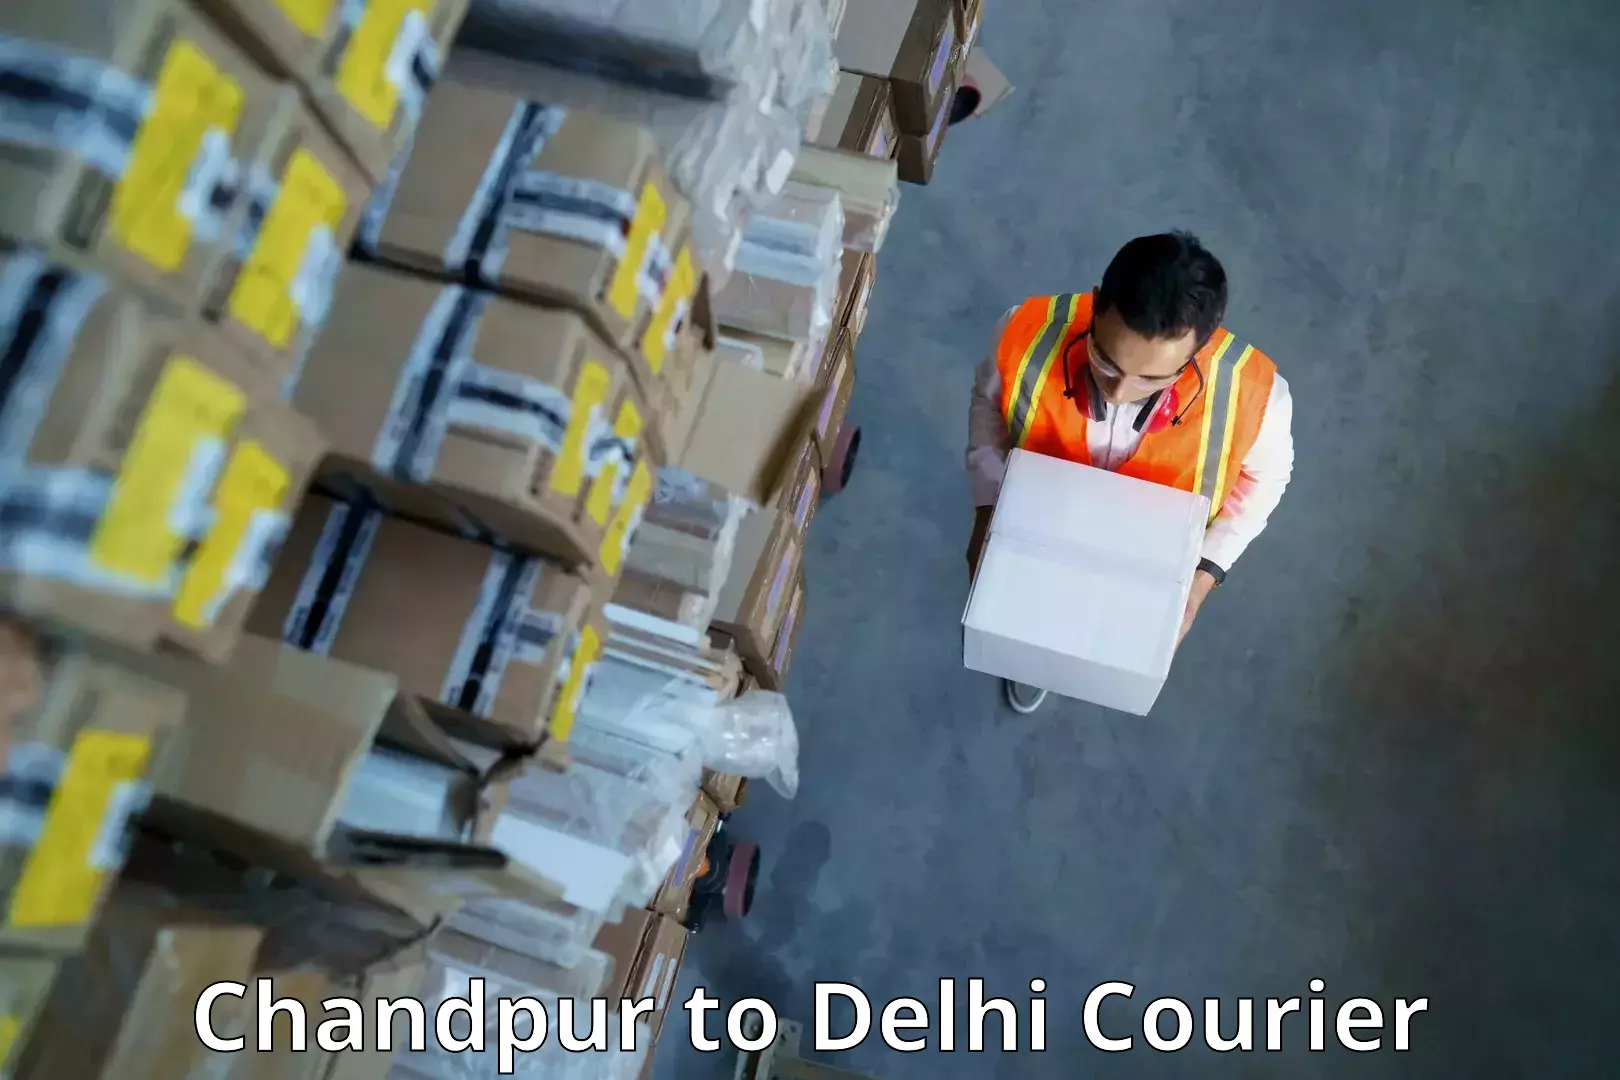 Modern parcel services Chandpur to NIT Delhi